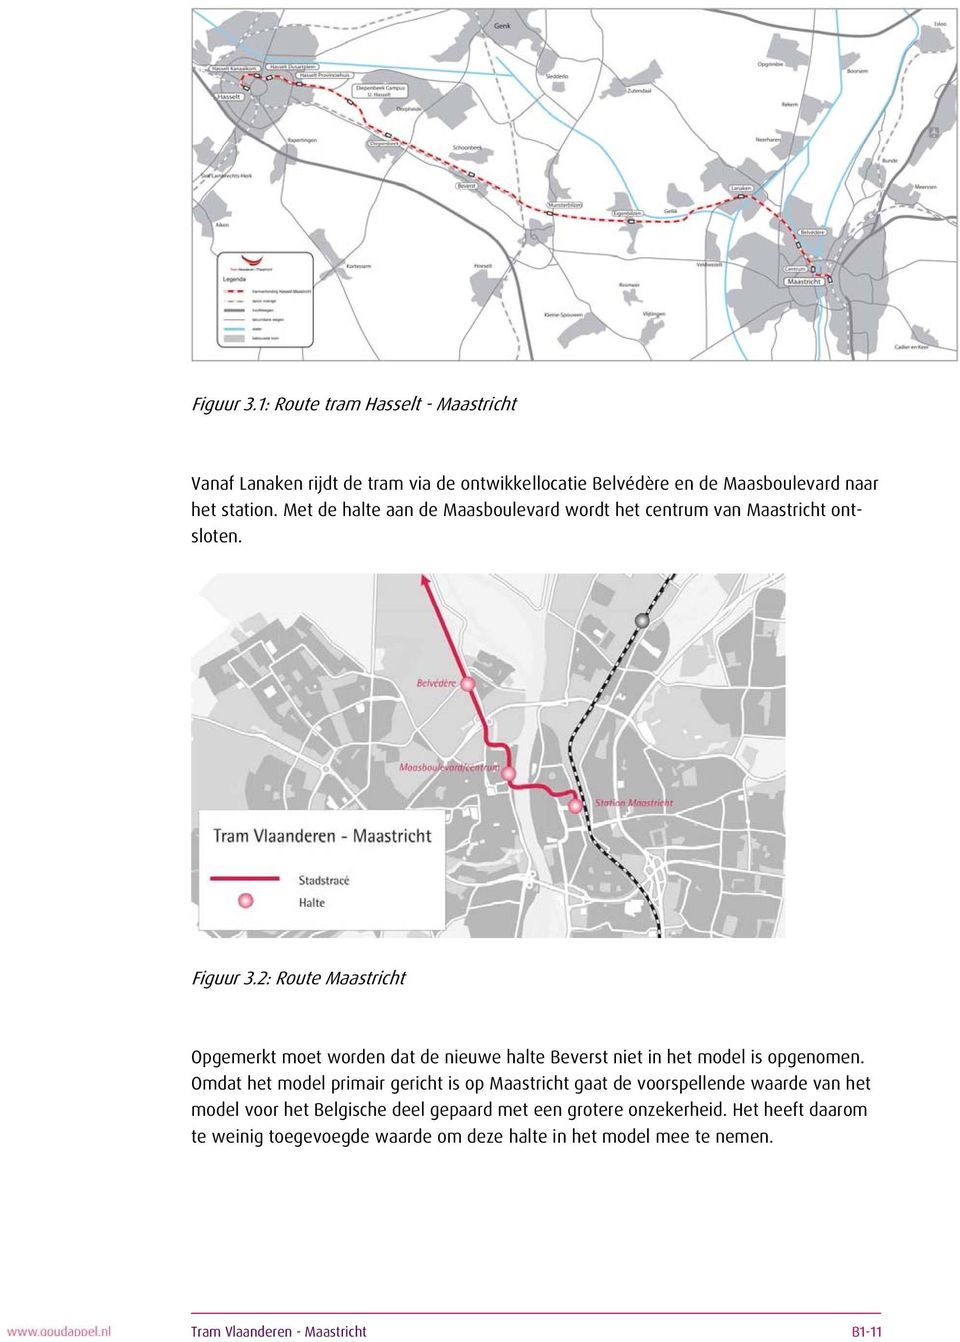 2: Route Maastricht Opgemerkt moet worden dat de nieuwe halte Beverst niet in het model is opgenomen.